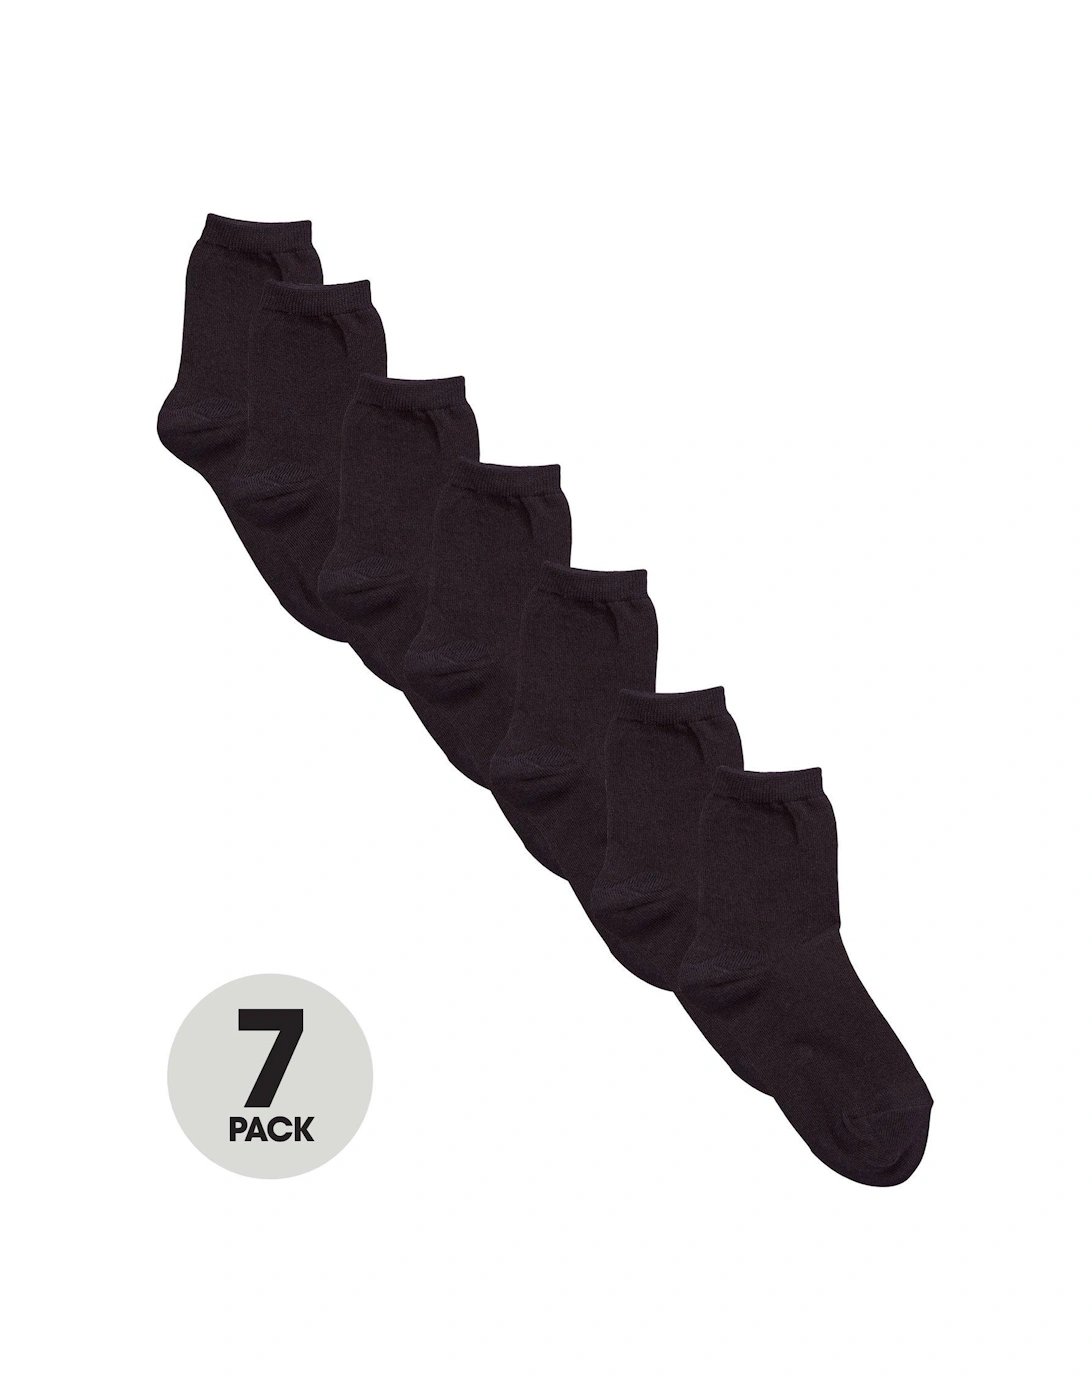 7 Pack Unisex Ankle Socks - Black, 2 of 1